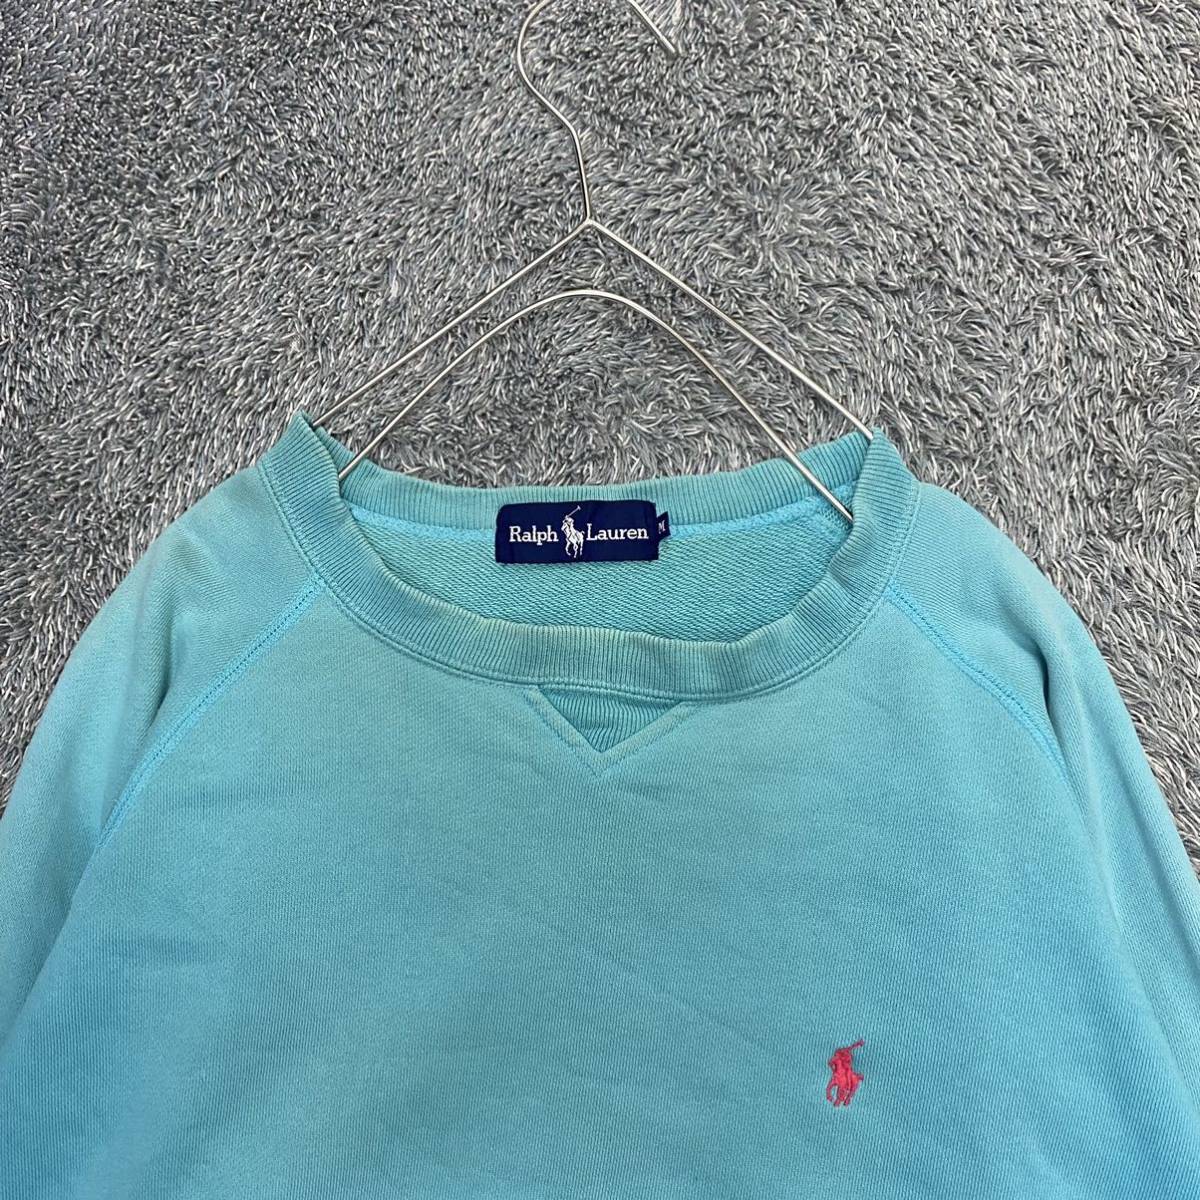 RALPH LAUREN Ralph Lauren тренировочный футболка размер M синий blue женский tops нет максимальной ставки (Z12